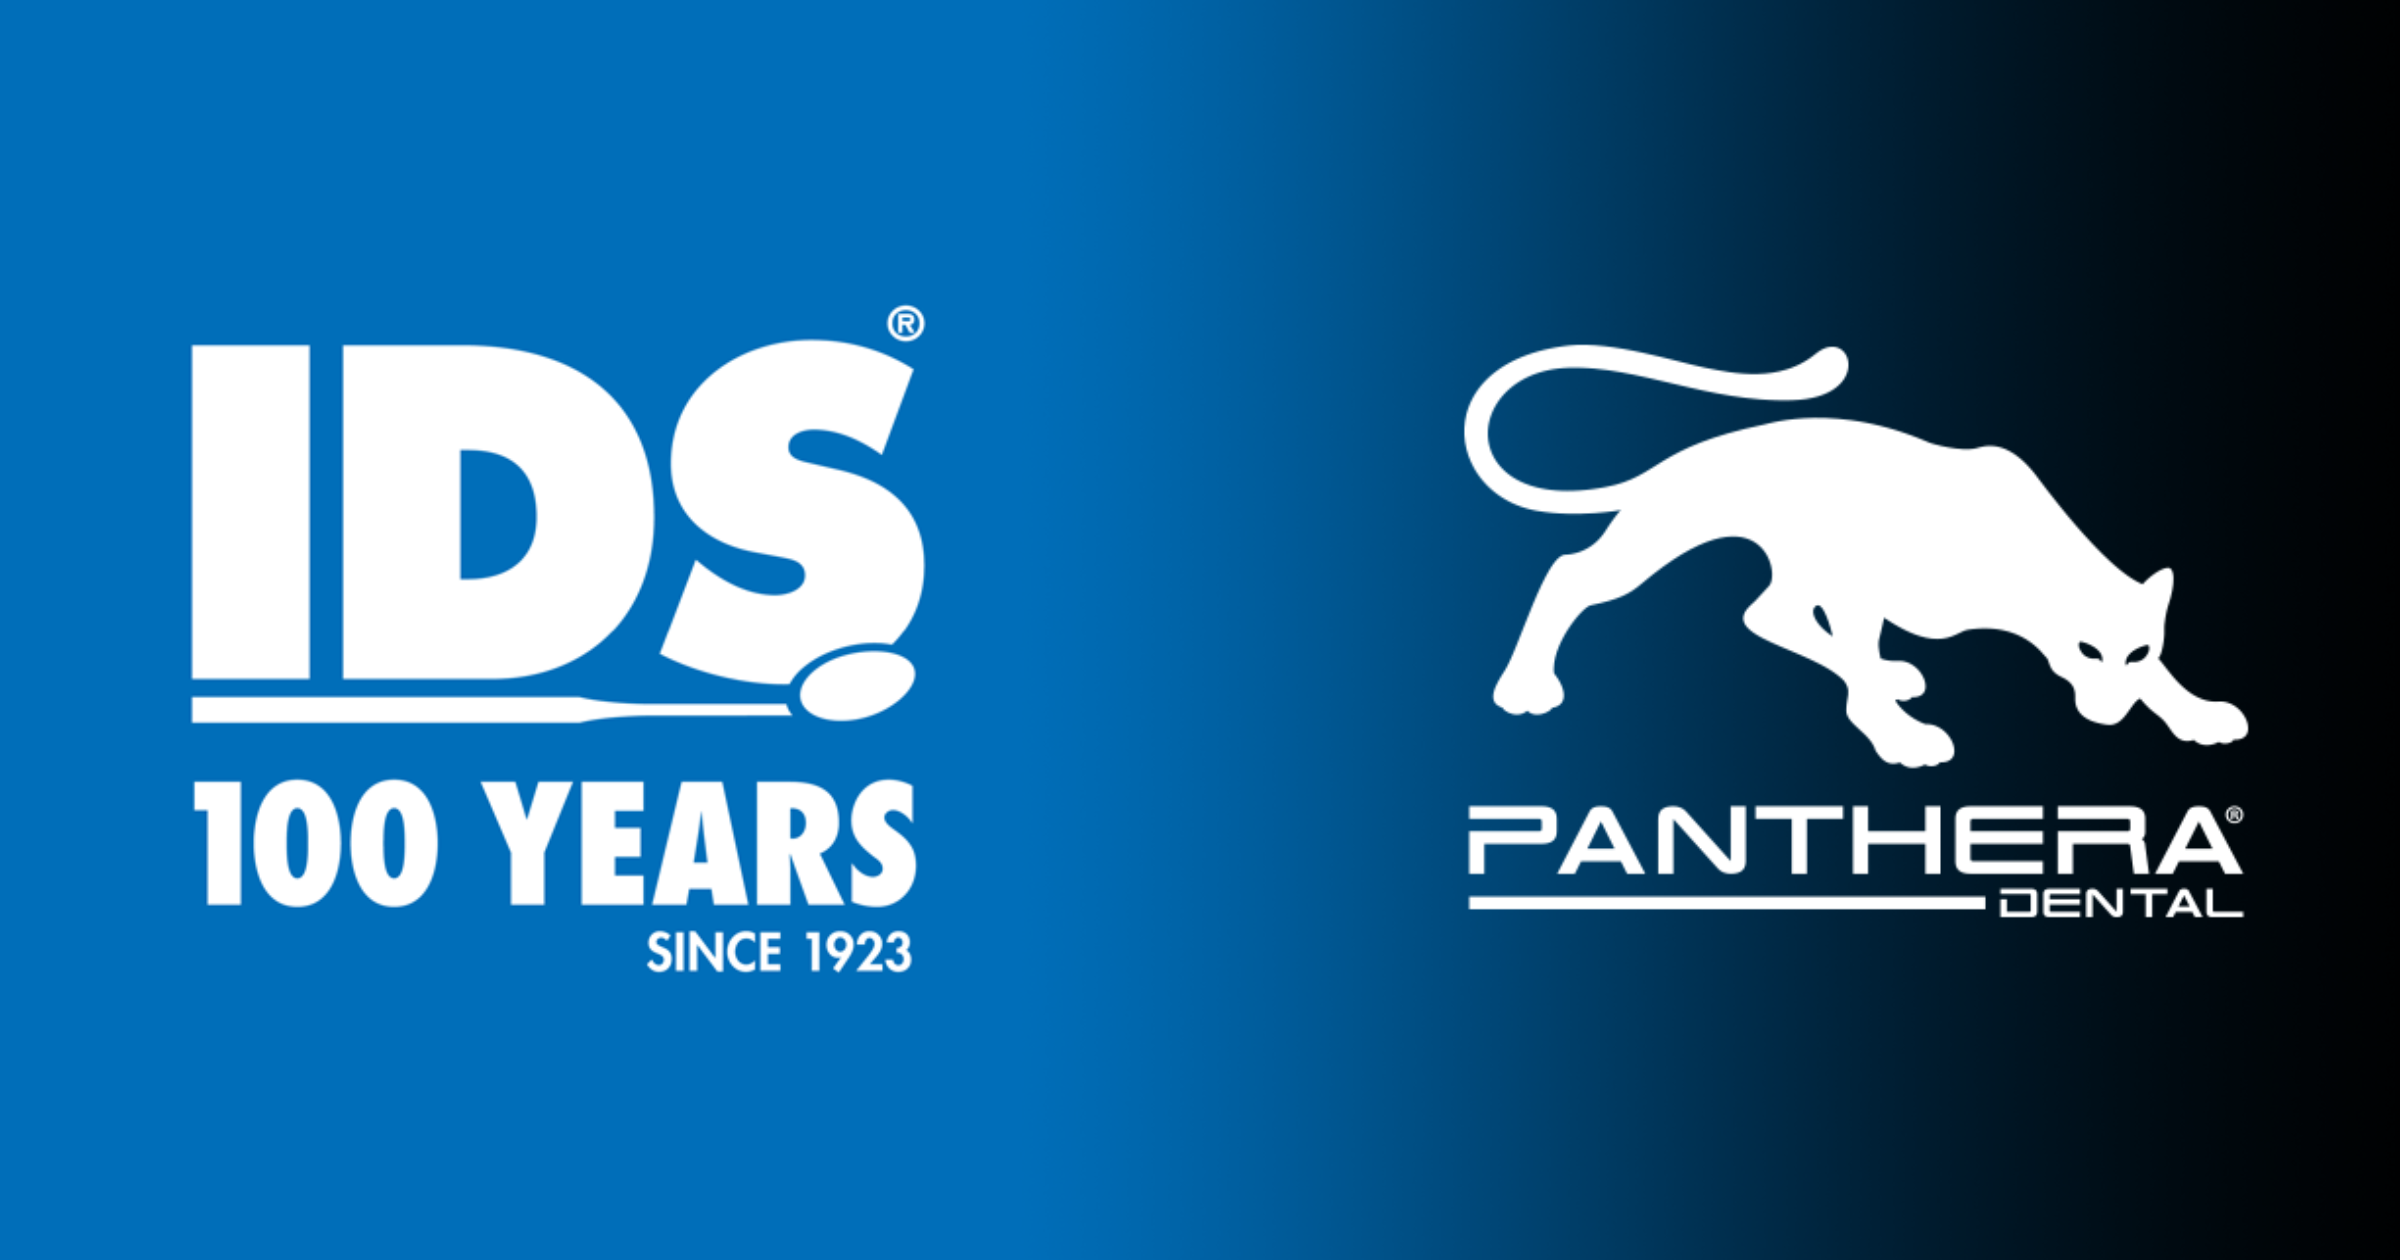 Logo-IDS-Logo-Panthera